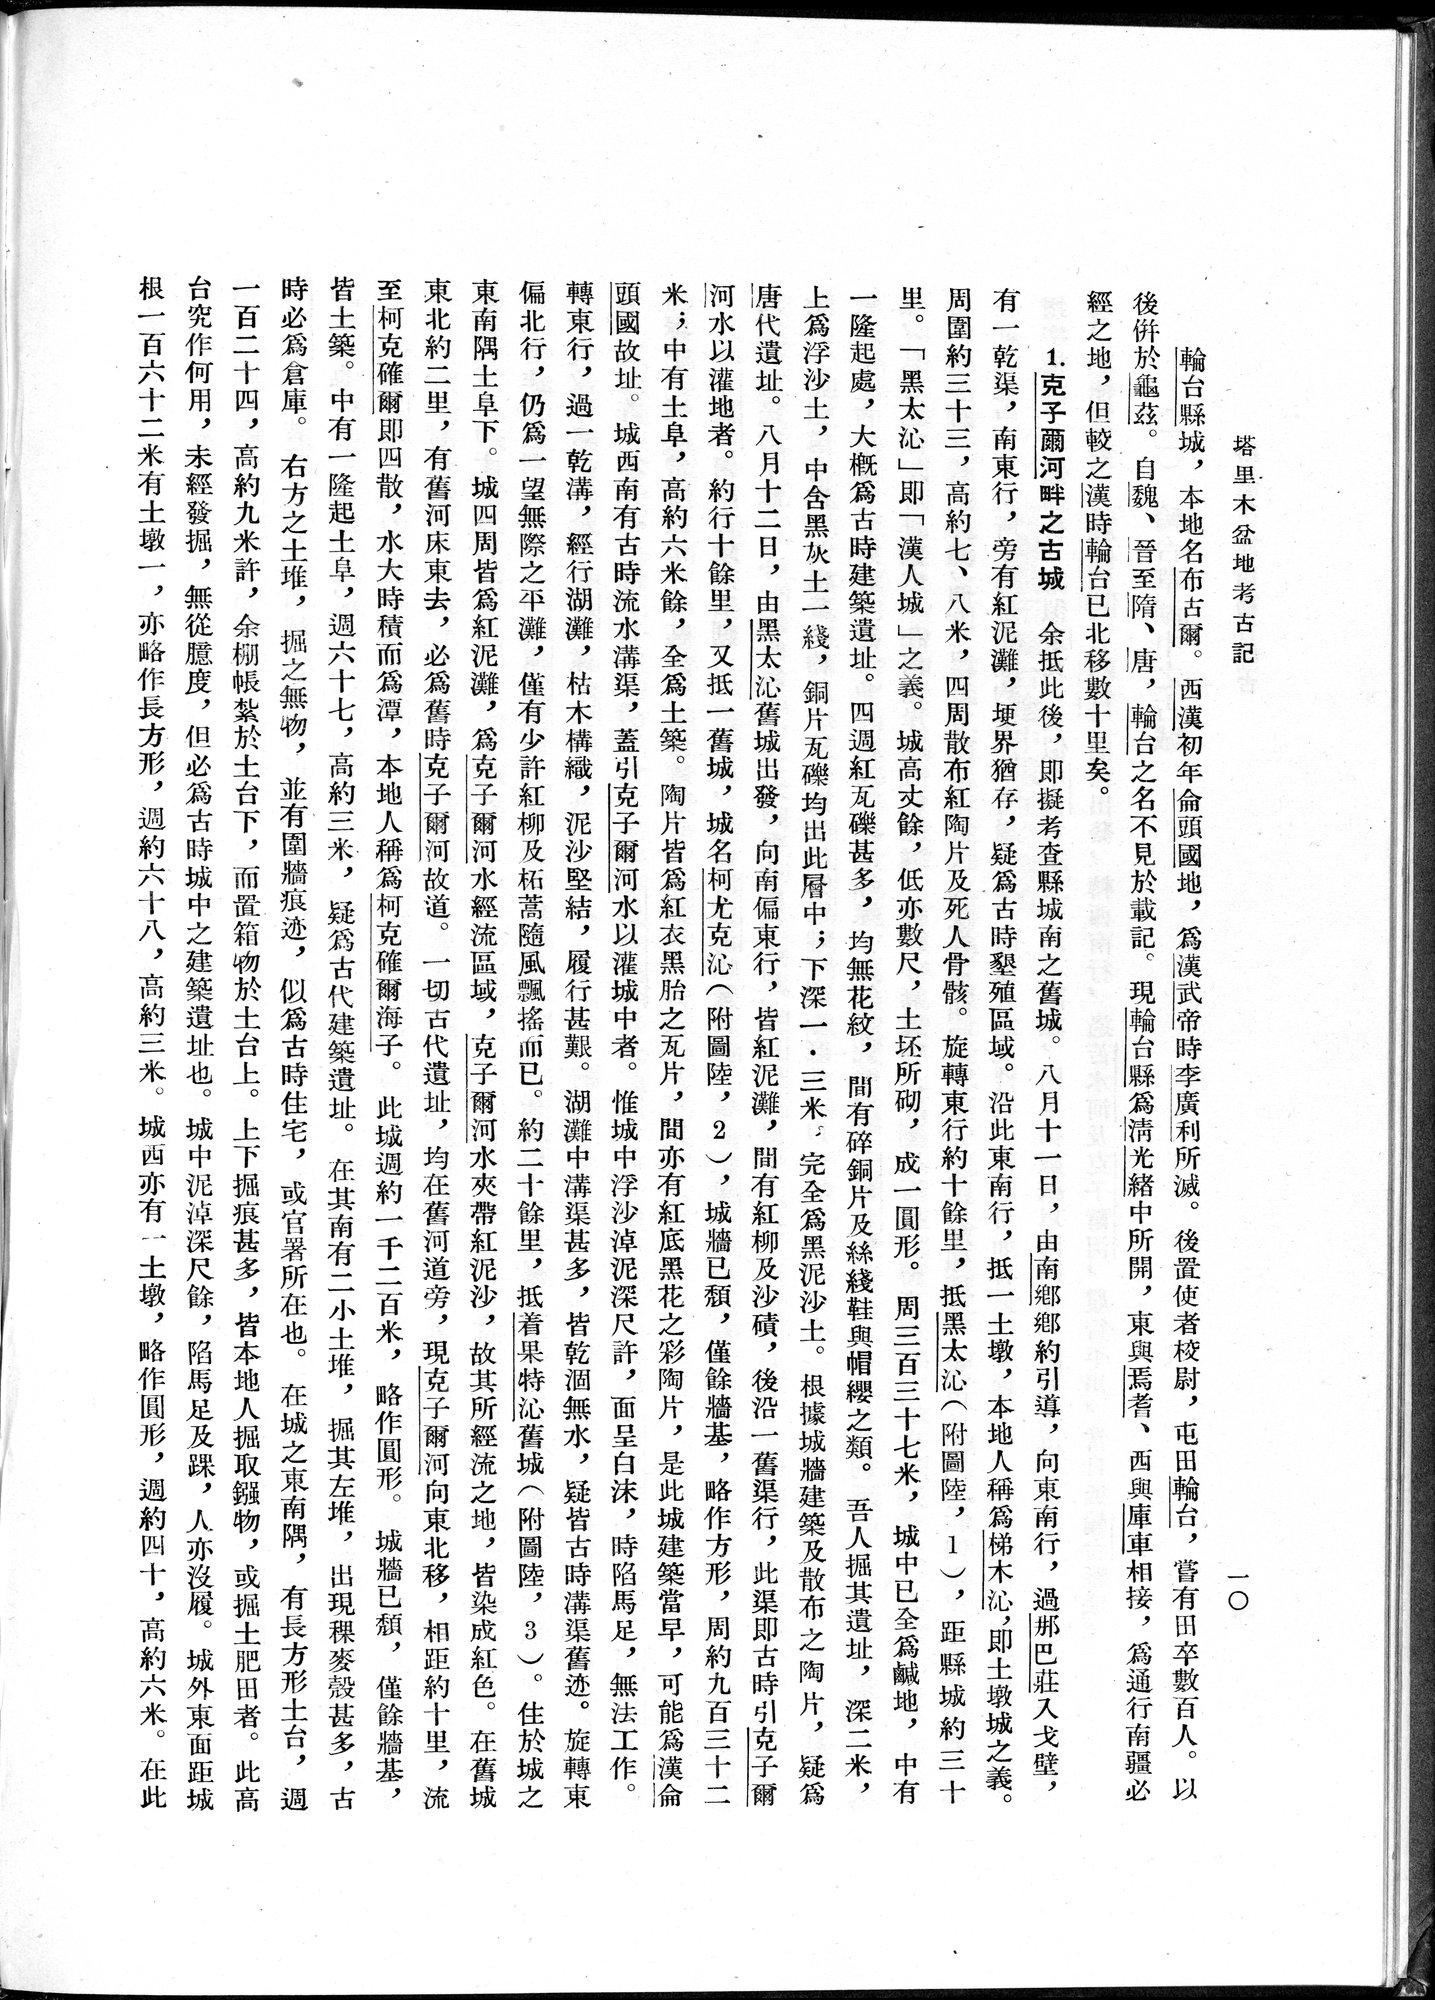 塔里木盆地考古記 : vol.1 / Page 34 (Grayscale High Resolution Image)